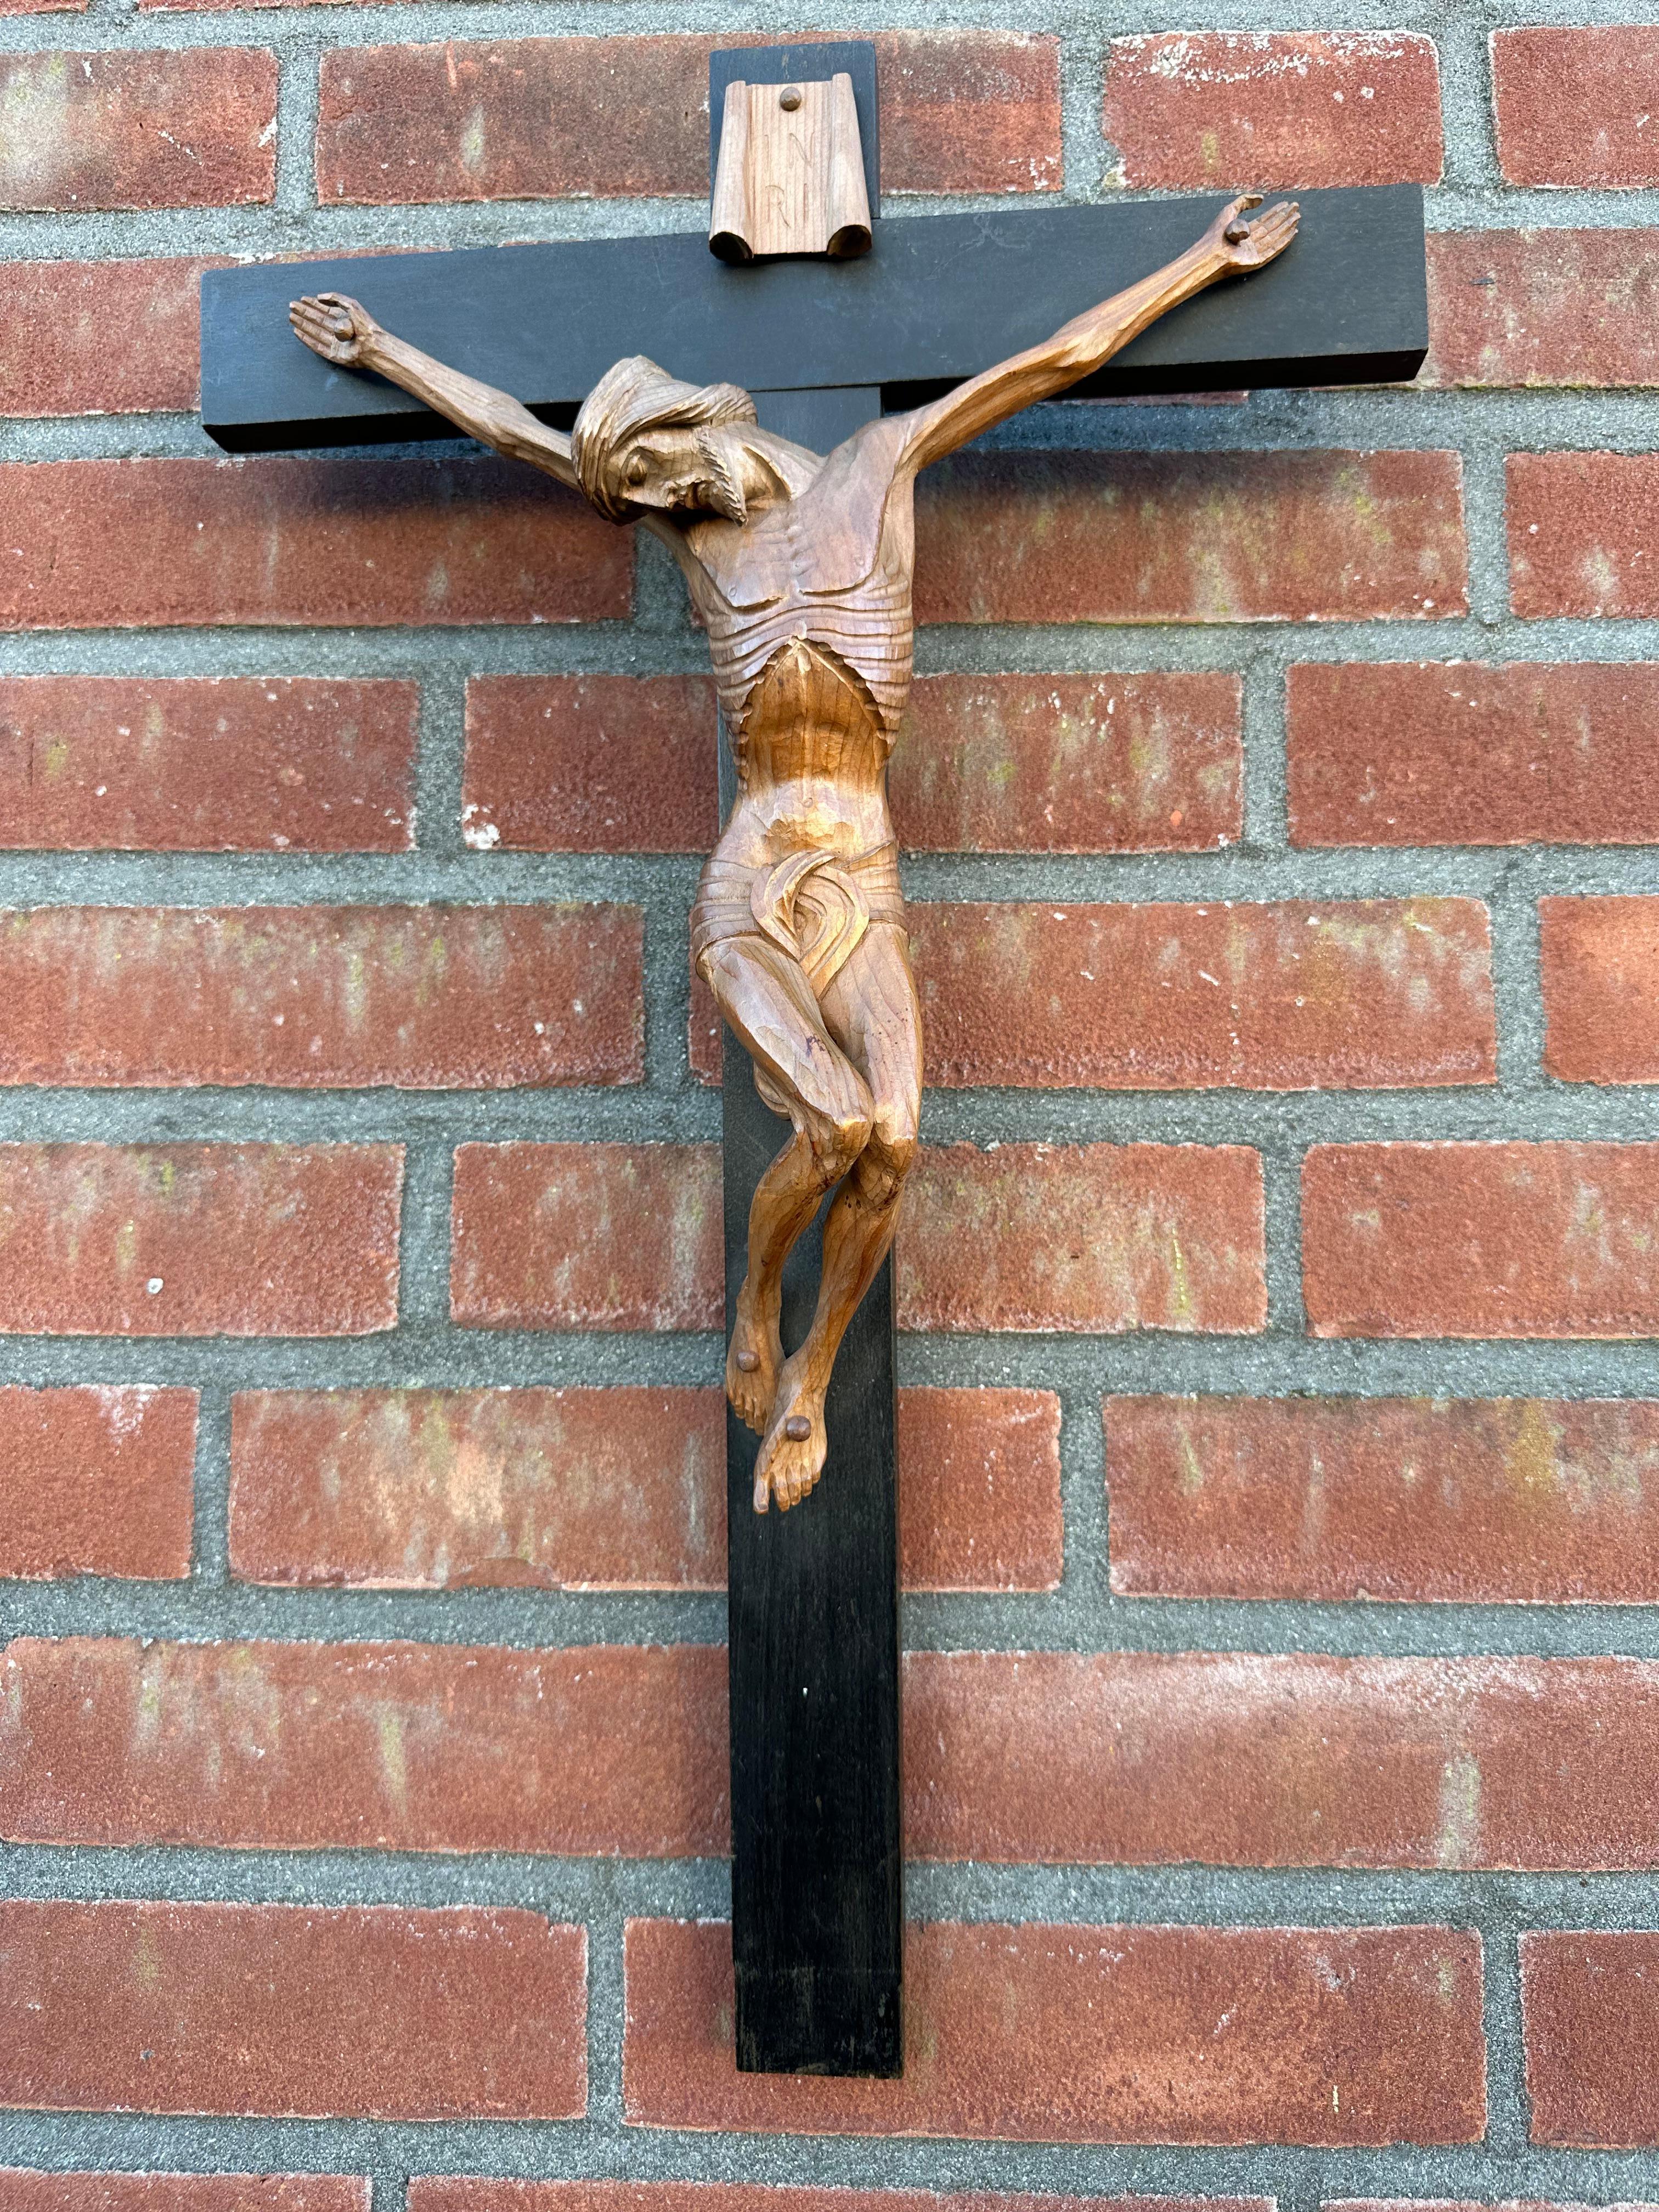 Crucifix antique de style Arte Antiques avec de superbes détails sculptés à la main et une patine étonnante.

Cette sculpture remarquable et de bonne taille du Christ (qui vient de baisser la tête) sur la croix est différente de presque toutes les